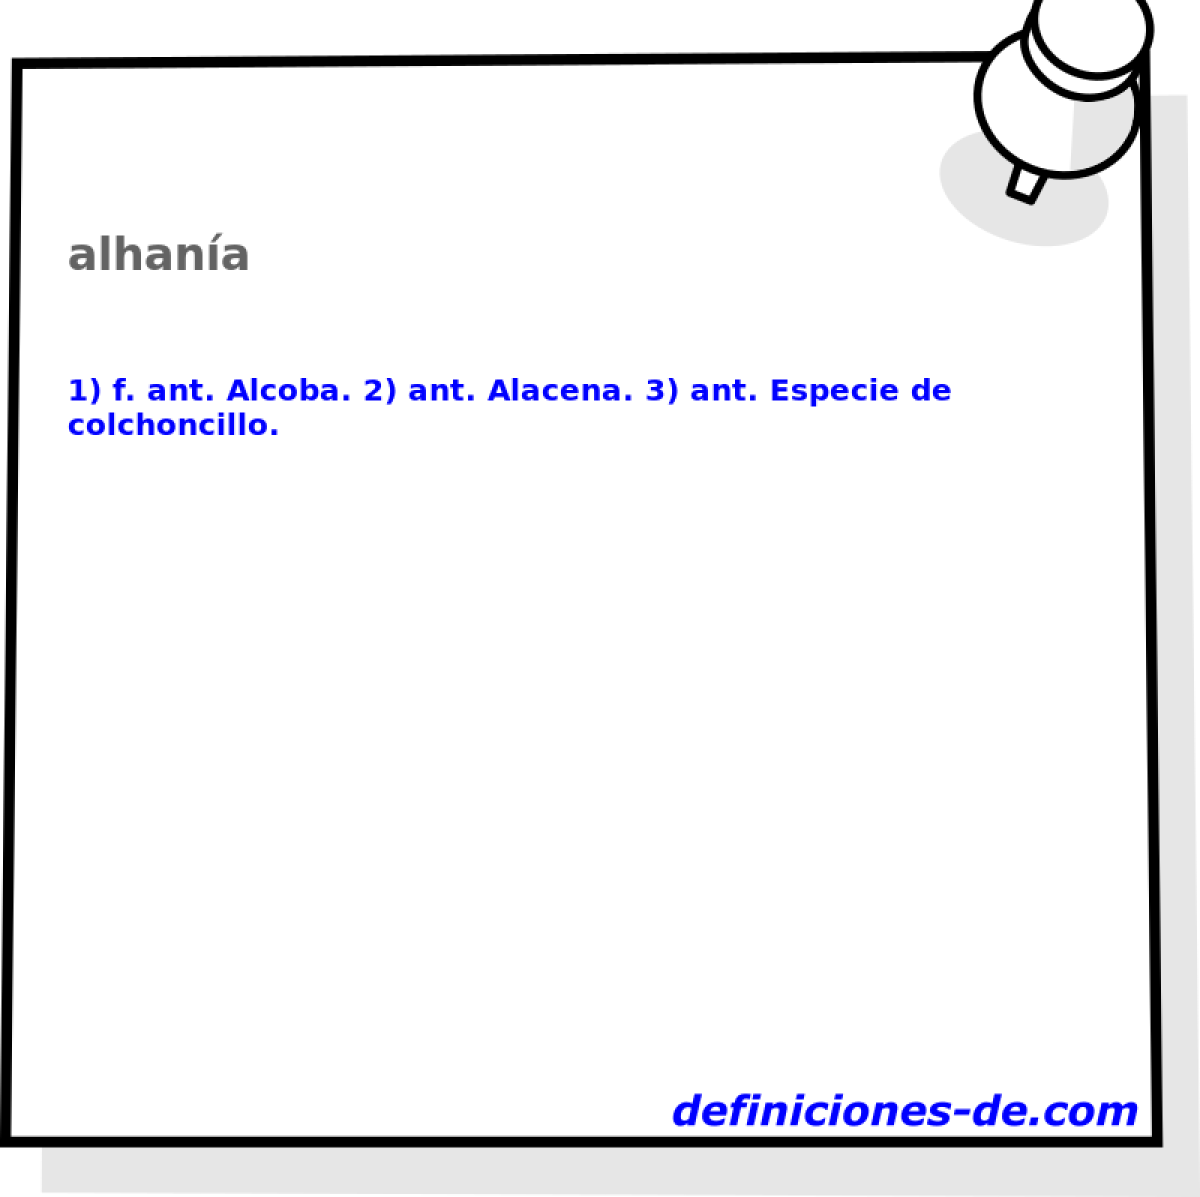 alhana 